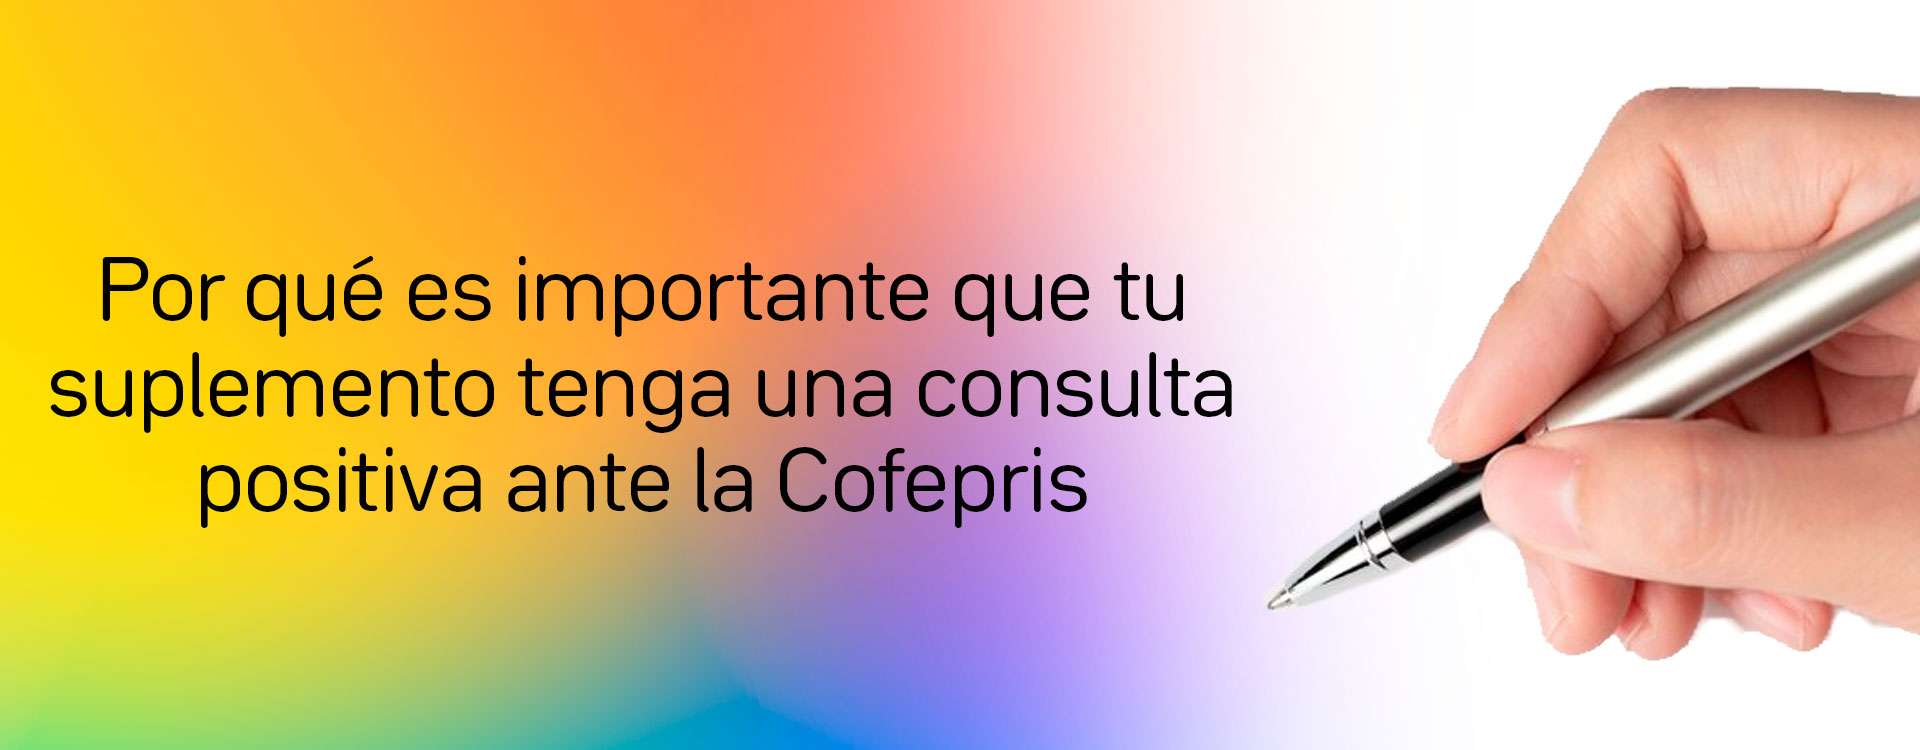 Por qué es importante que tu suplemento tenga una consulta positiva ante la Cofepris